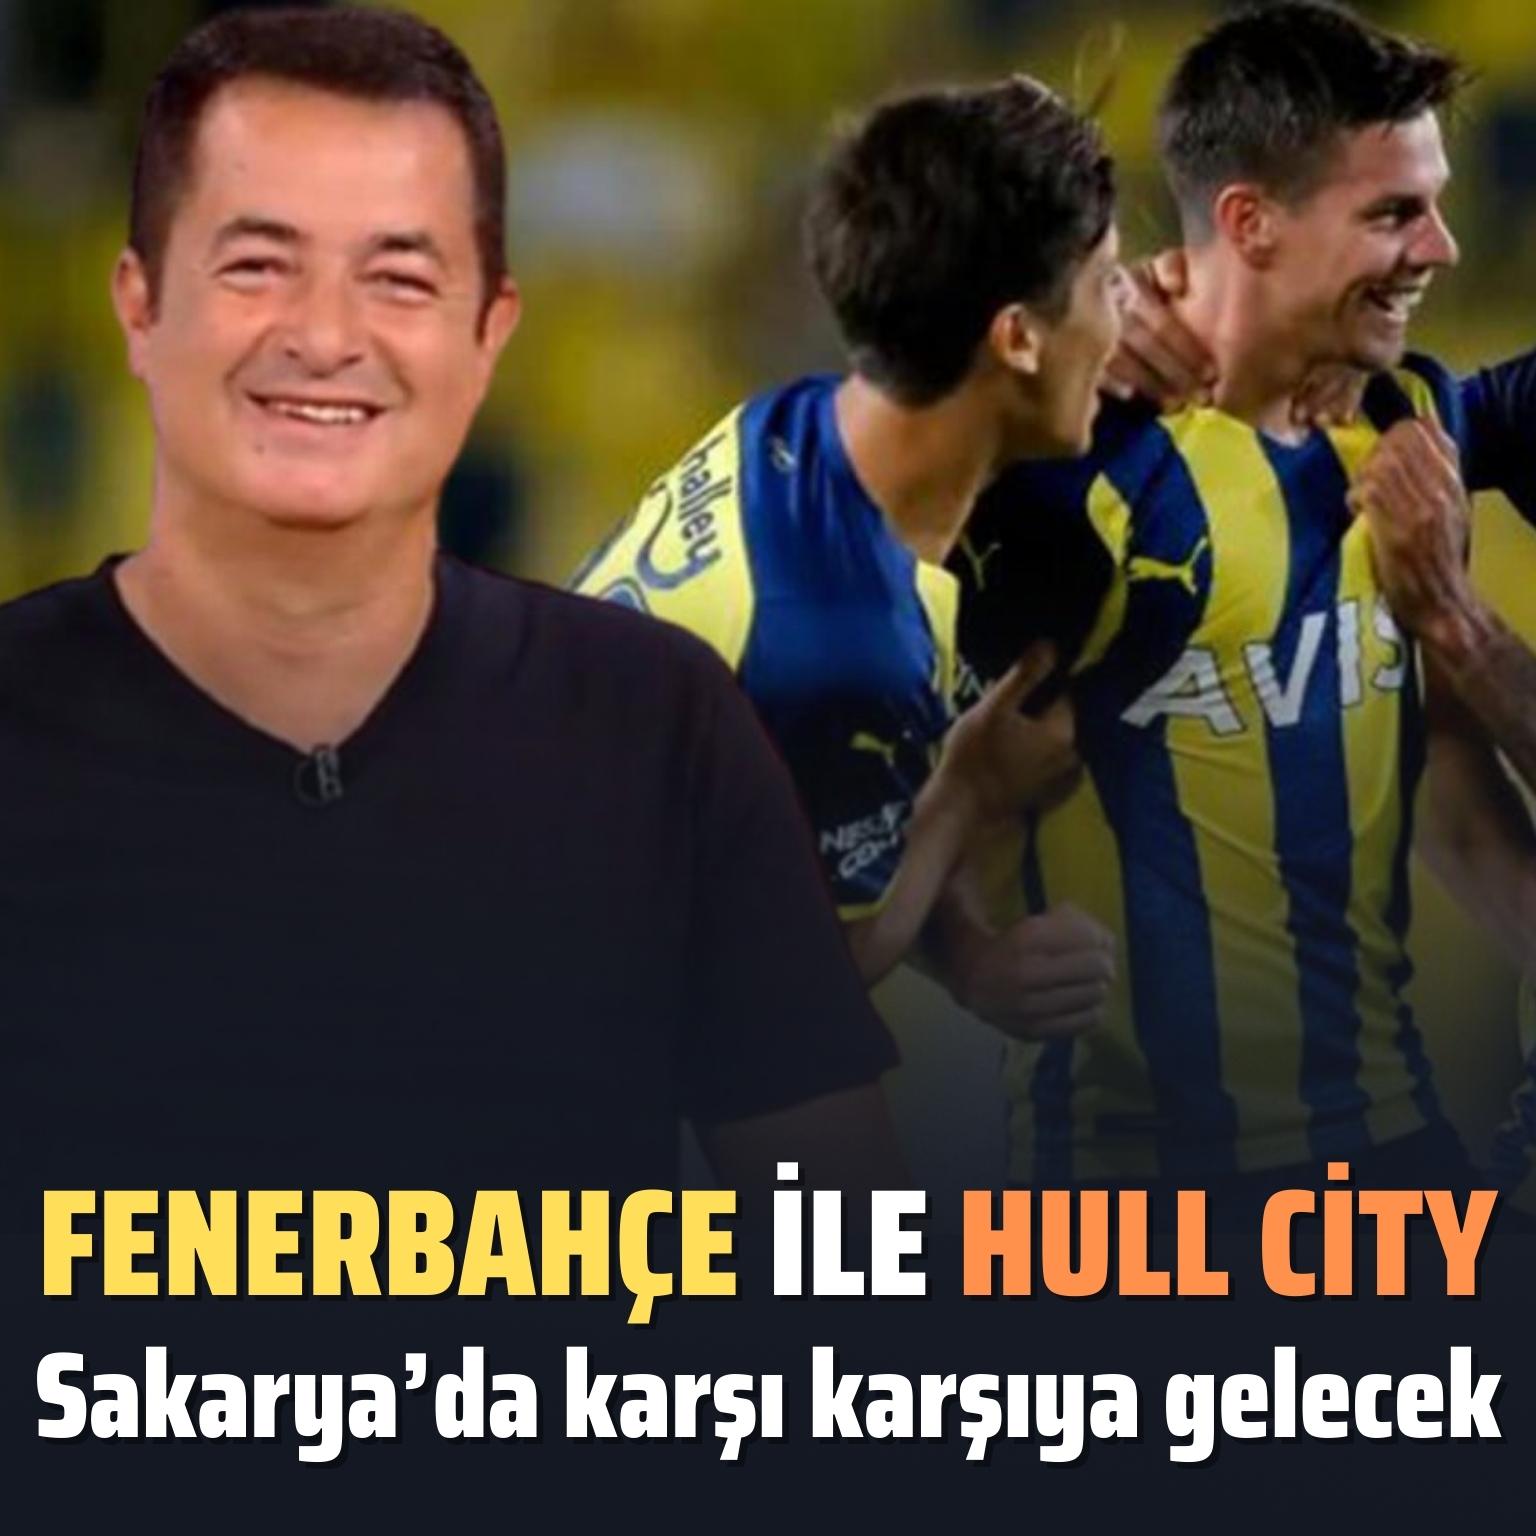 Fenerbahçe ile Hull City Sakarya’da karşı karşıya gelecek